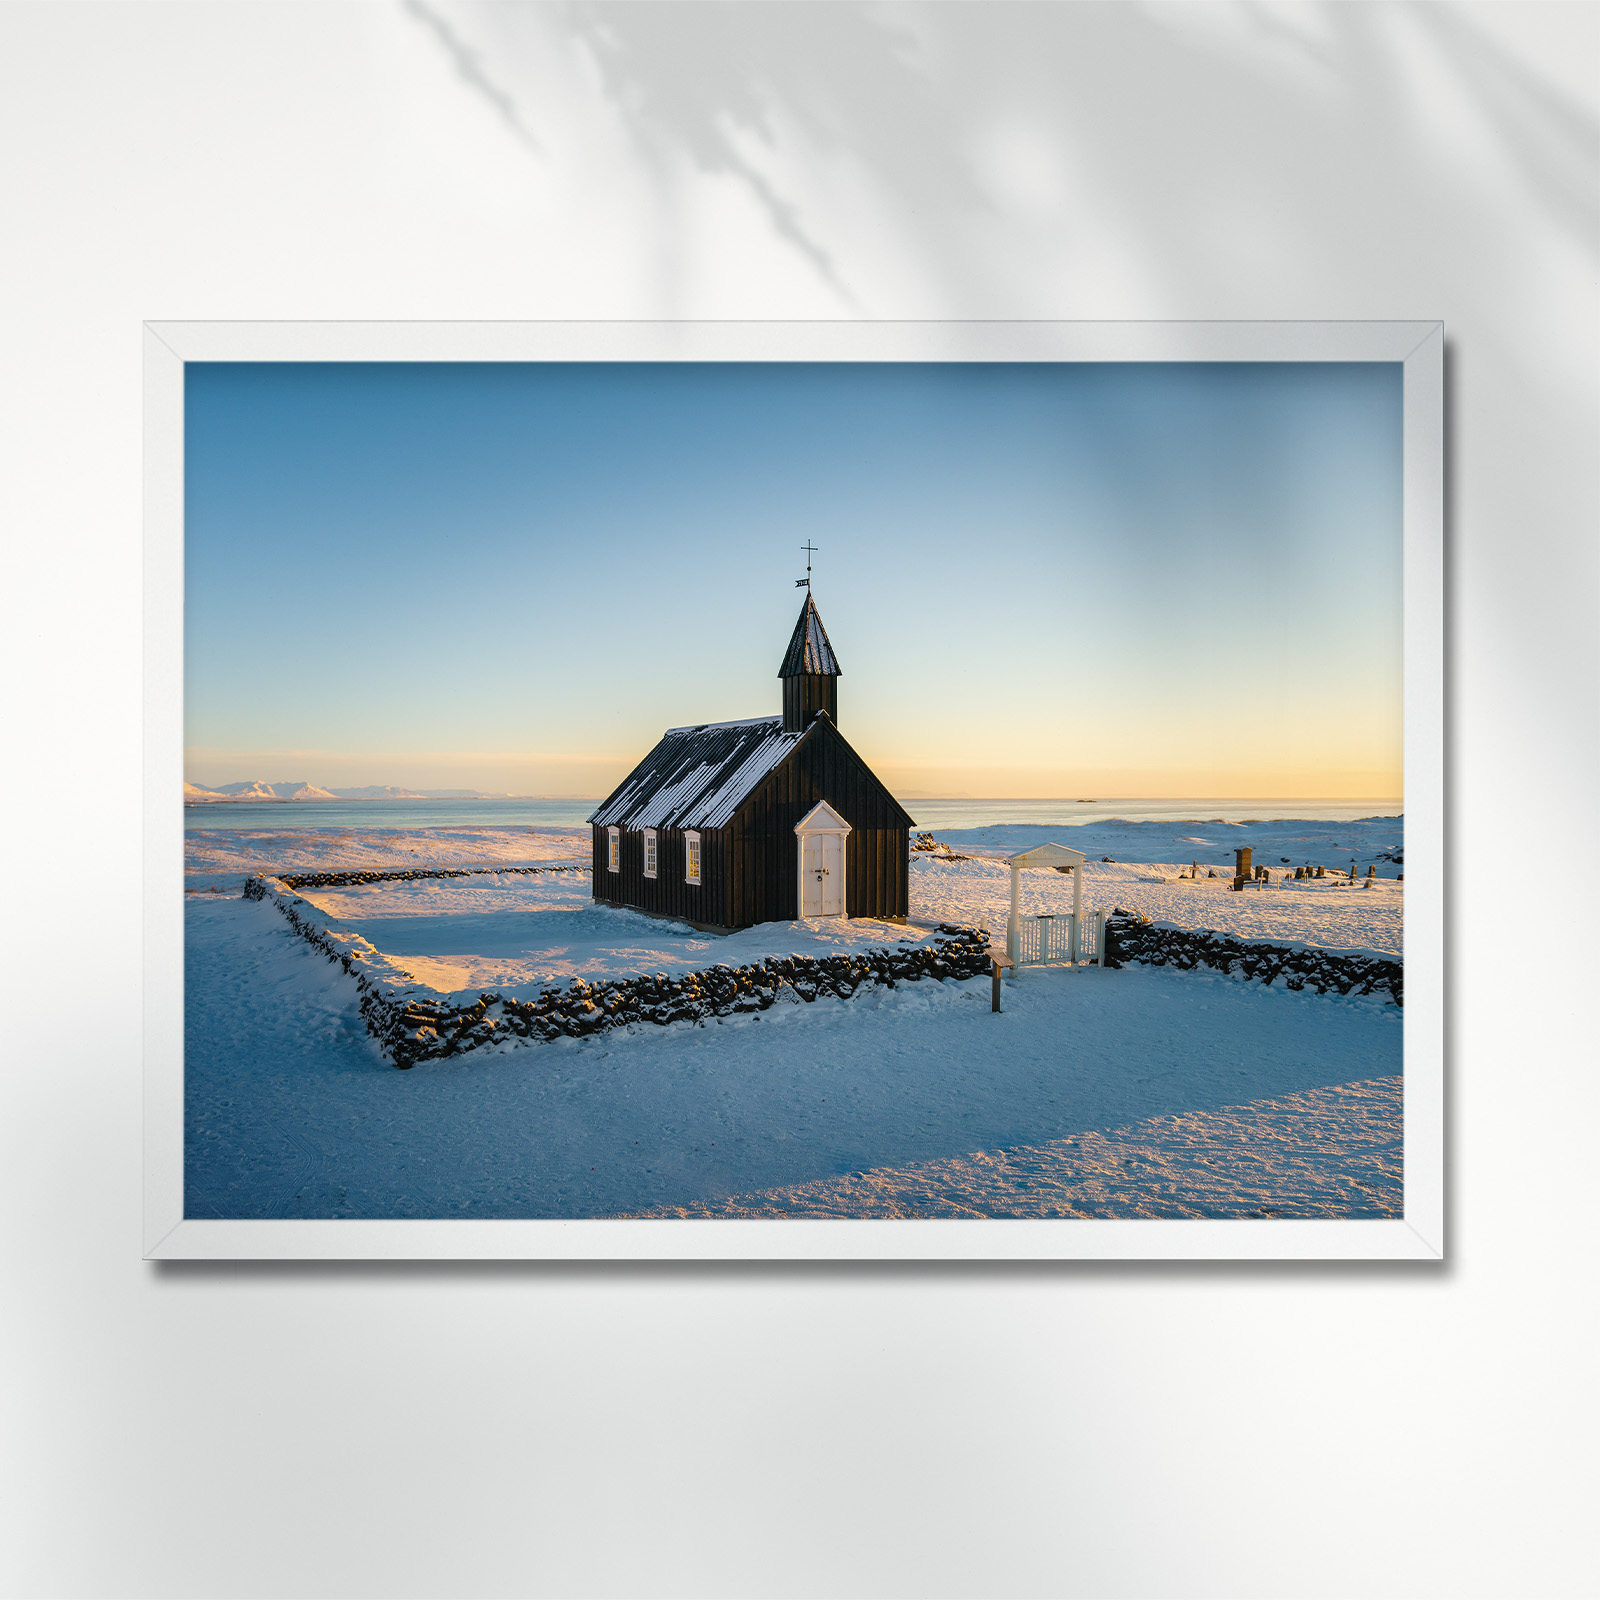 Budakirkja-church-iceland-poster-frame